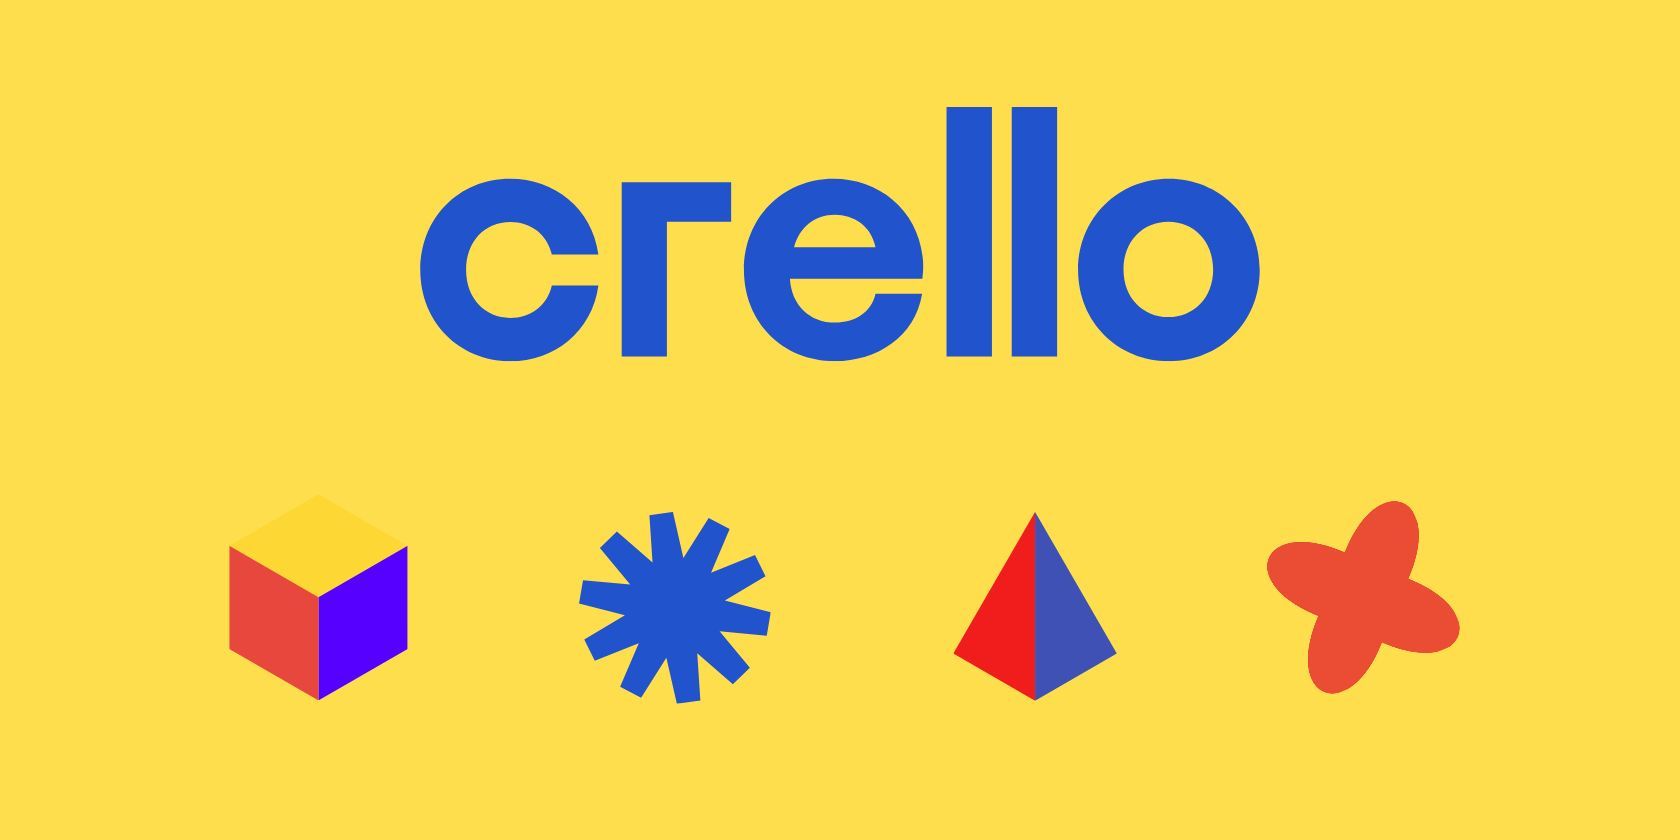 Crello design tool